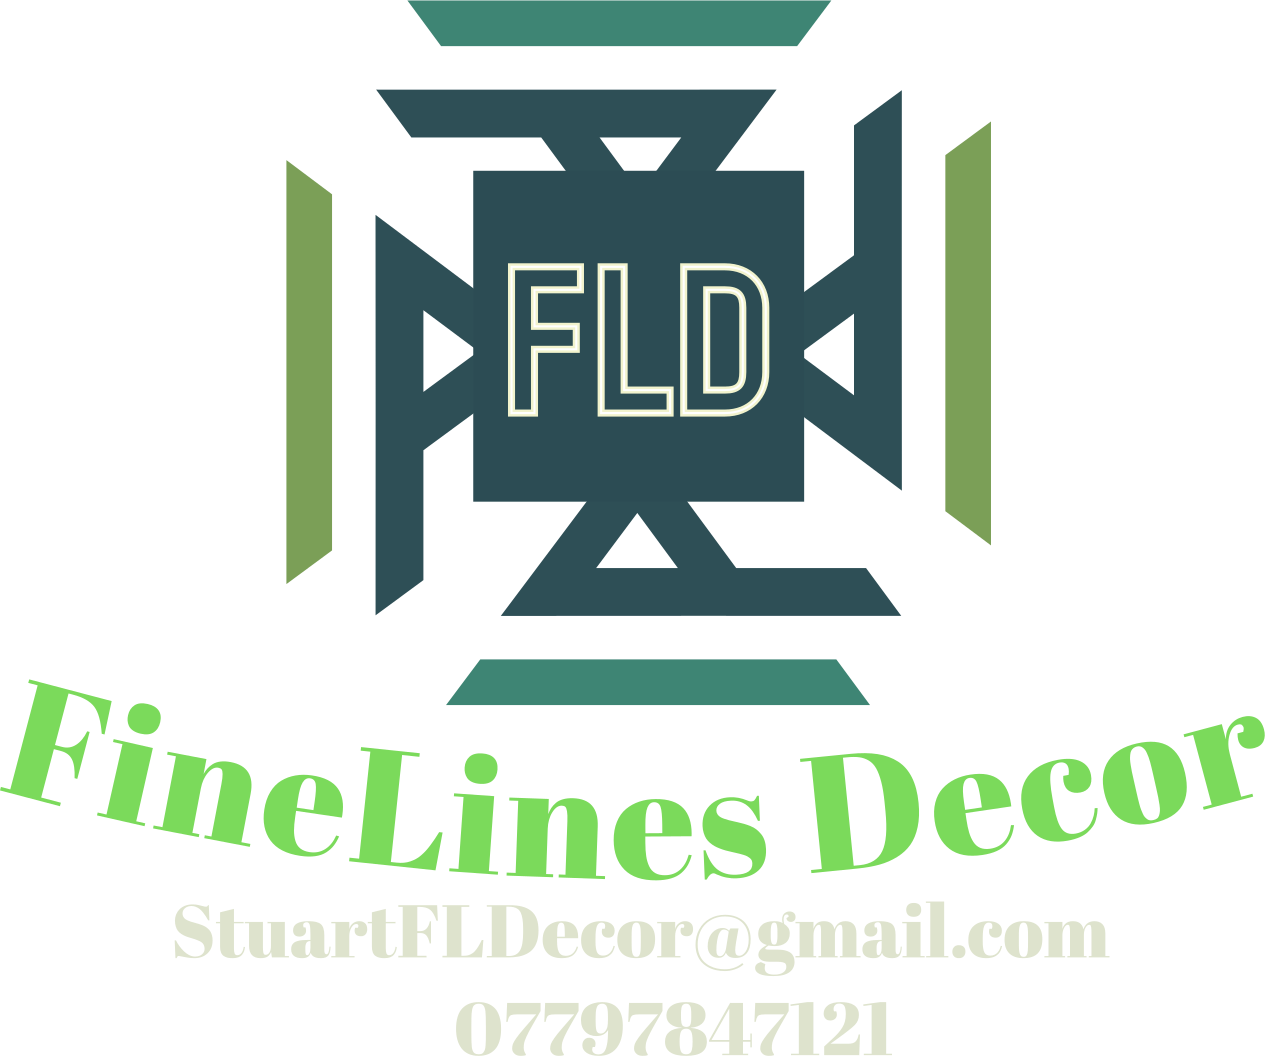 FineLines Decor's web page